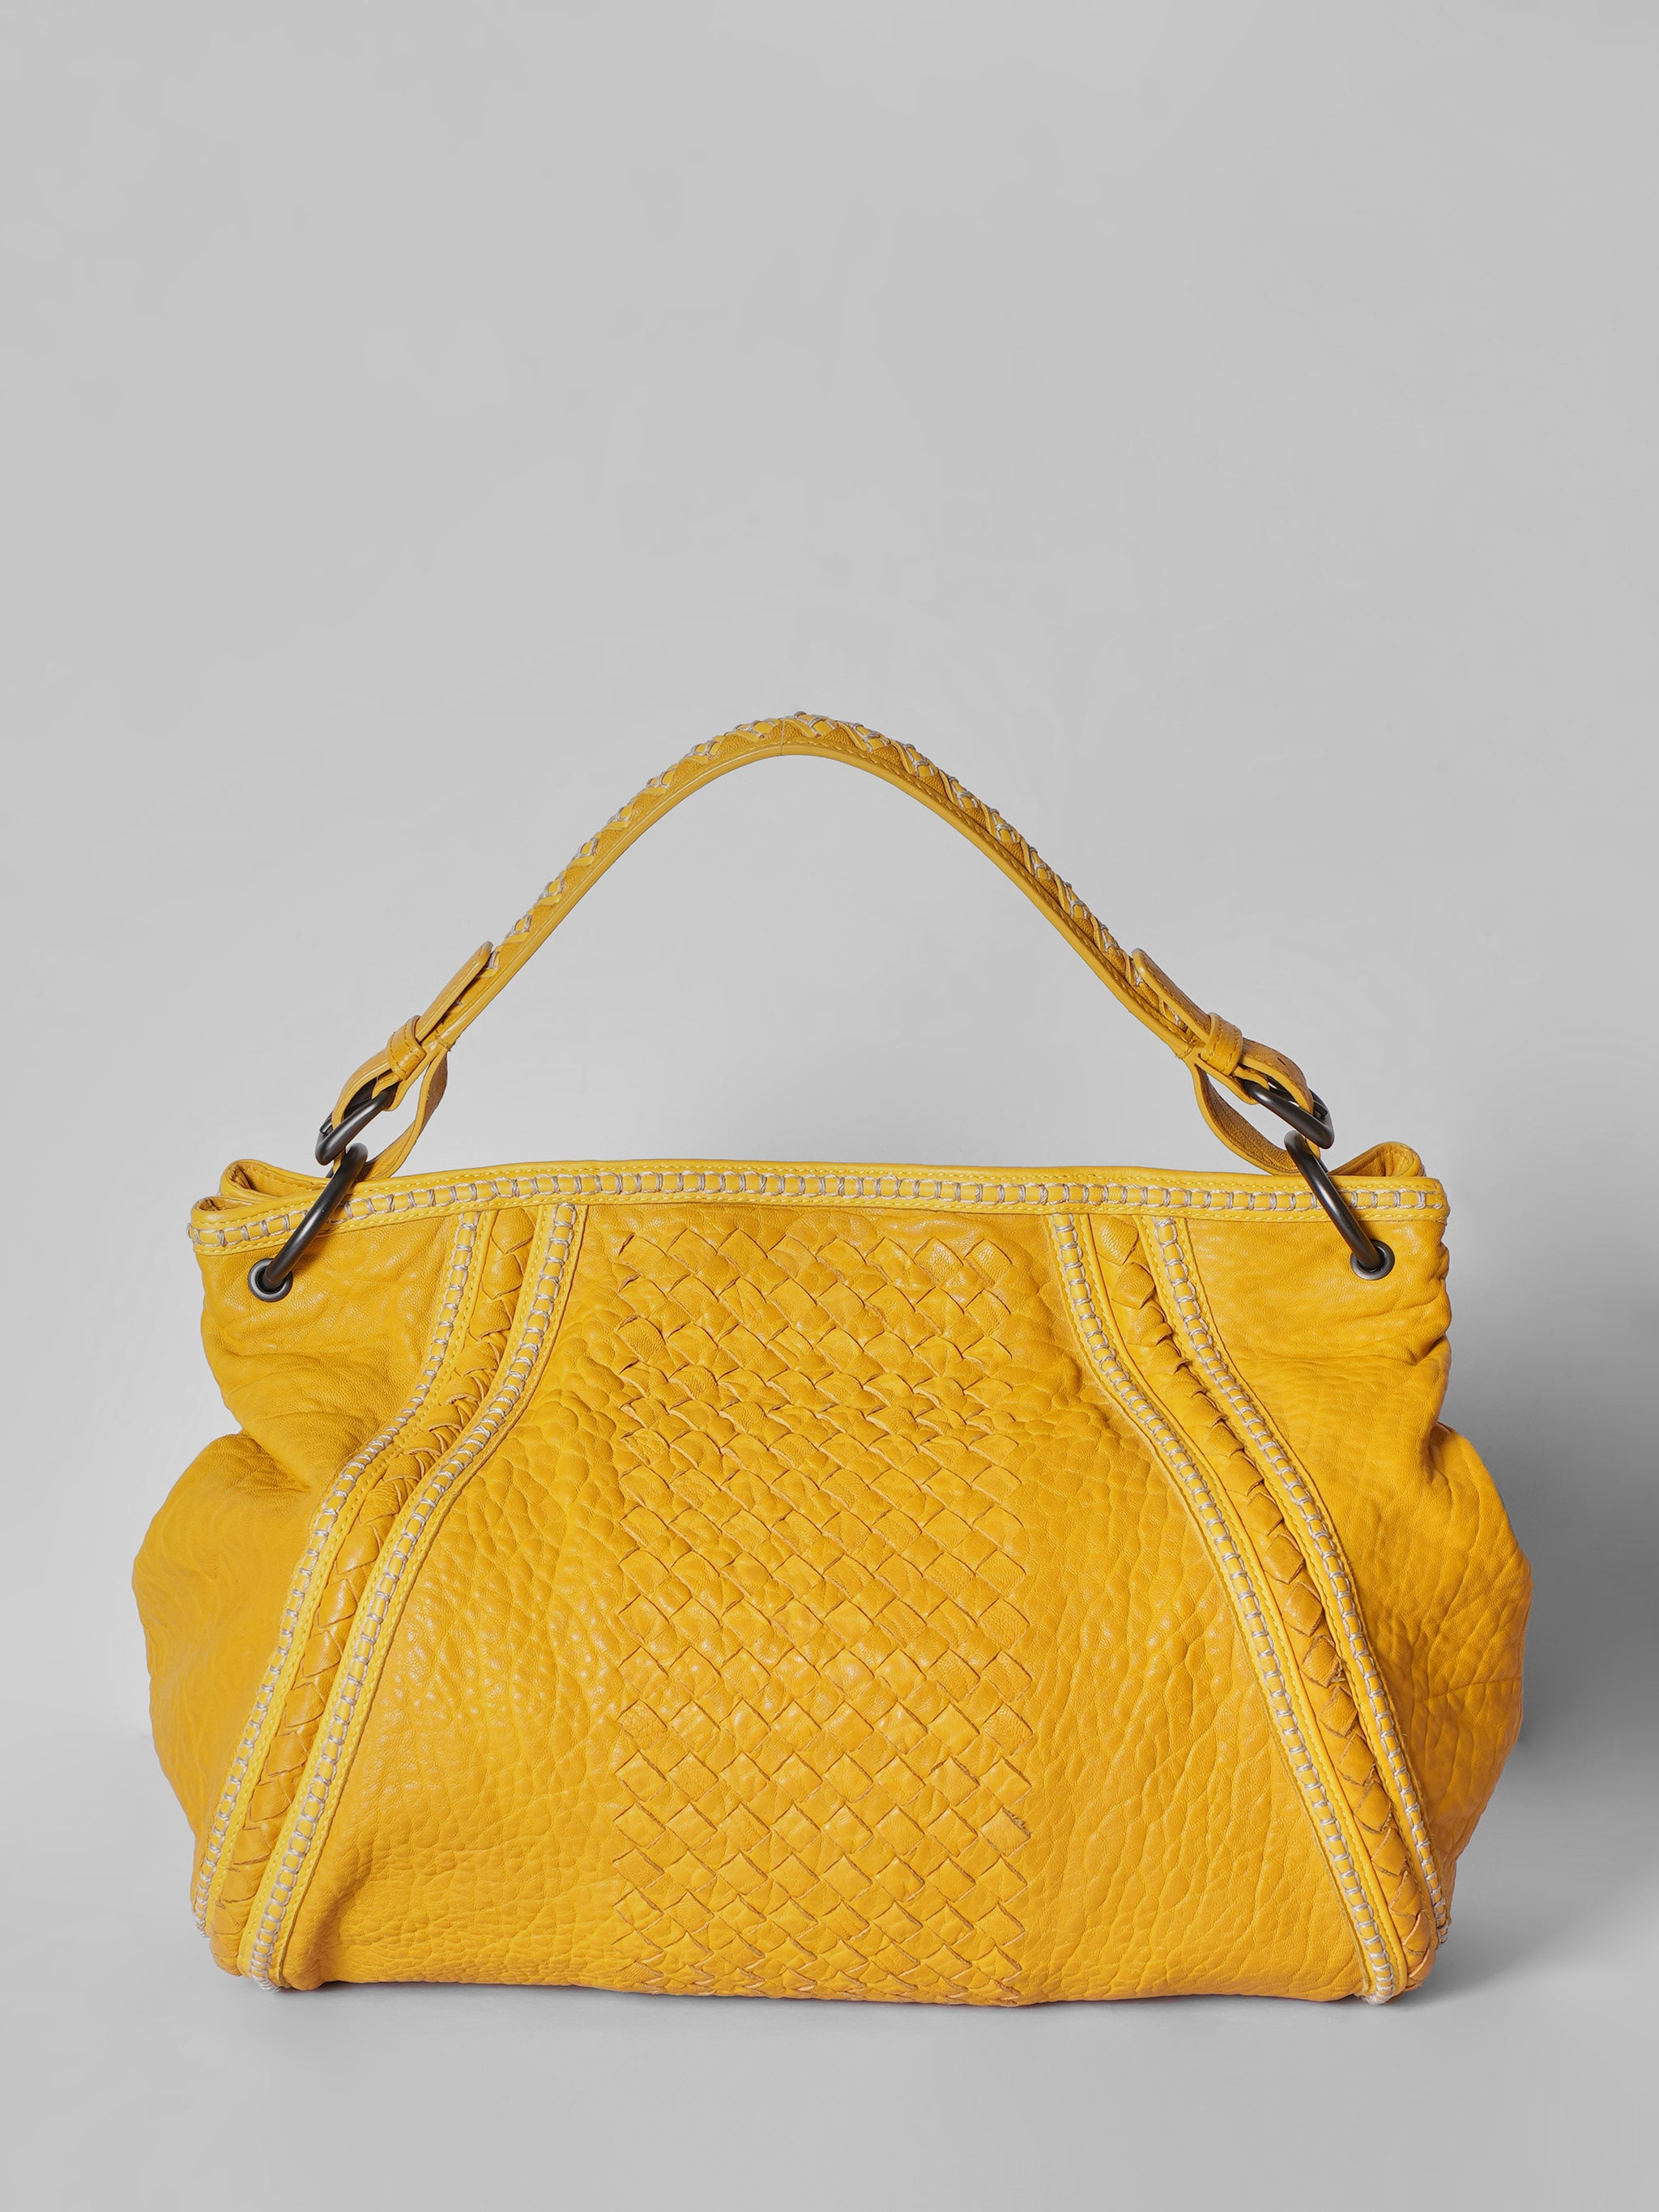 Bottega Veneta Intrecciato Yellow Bag